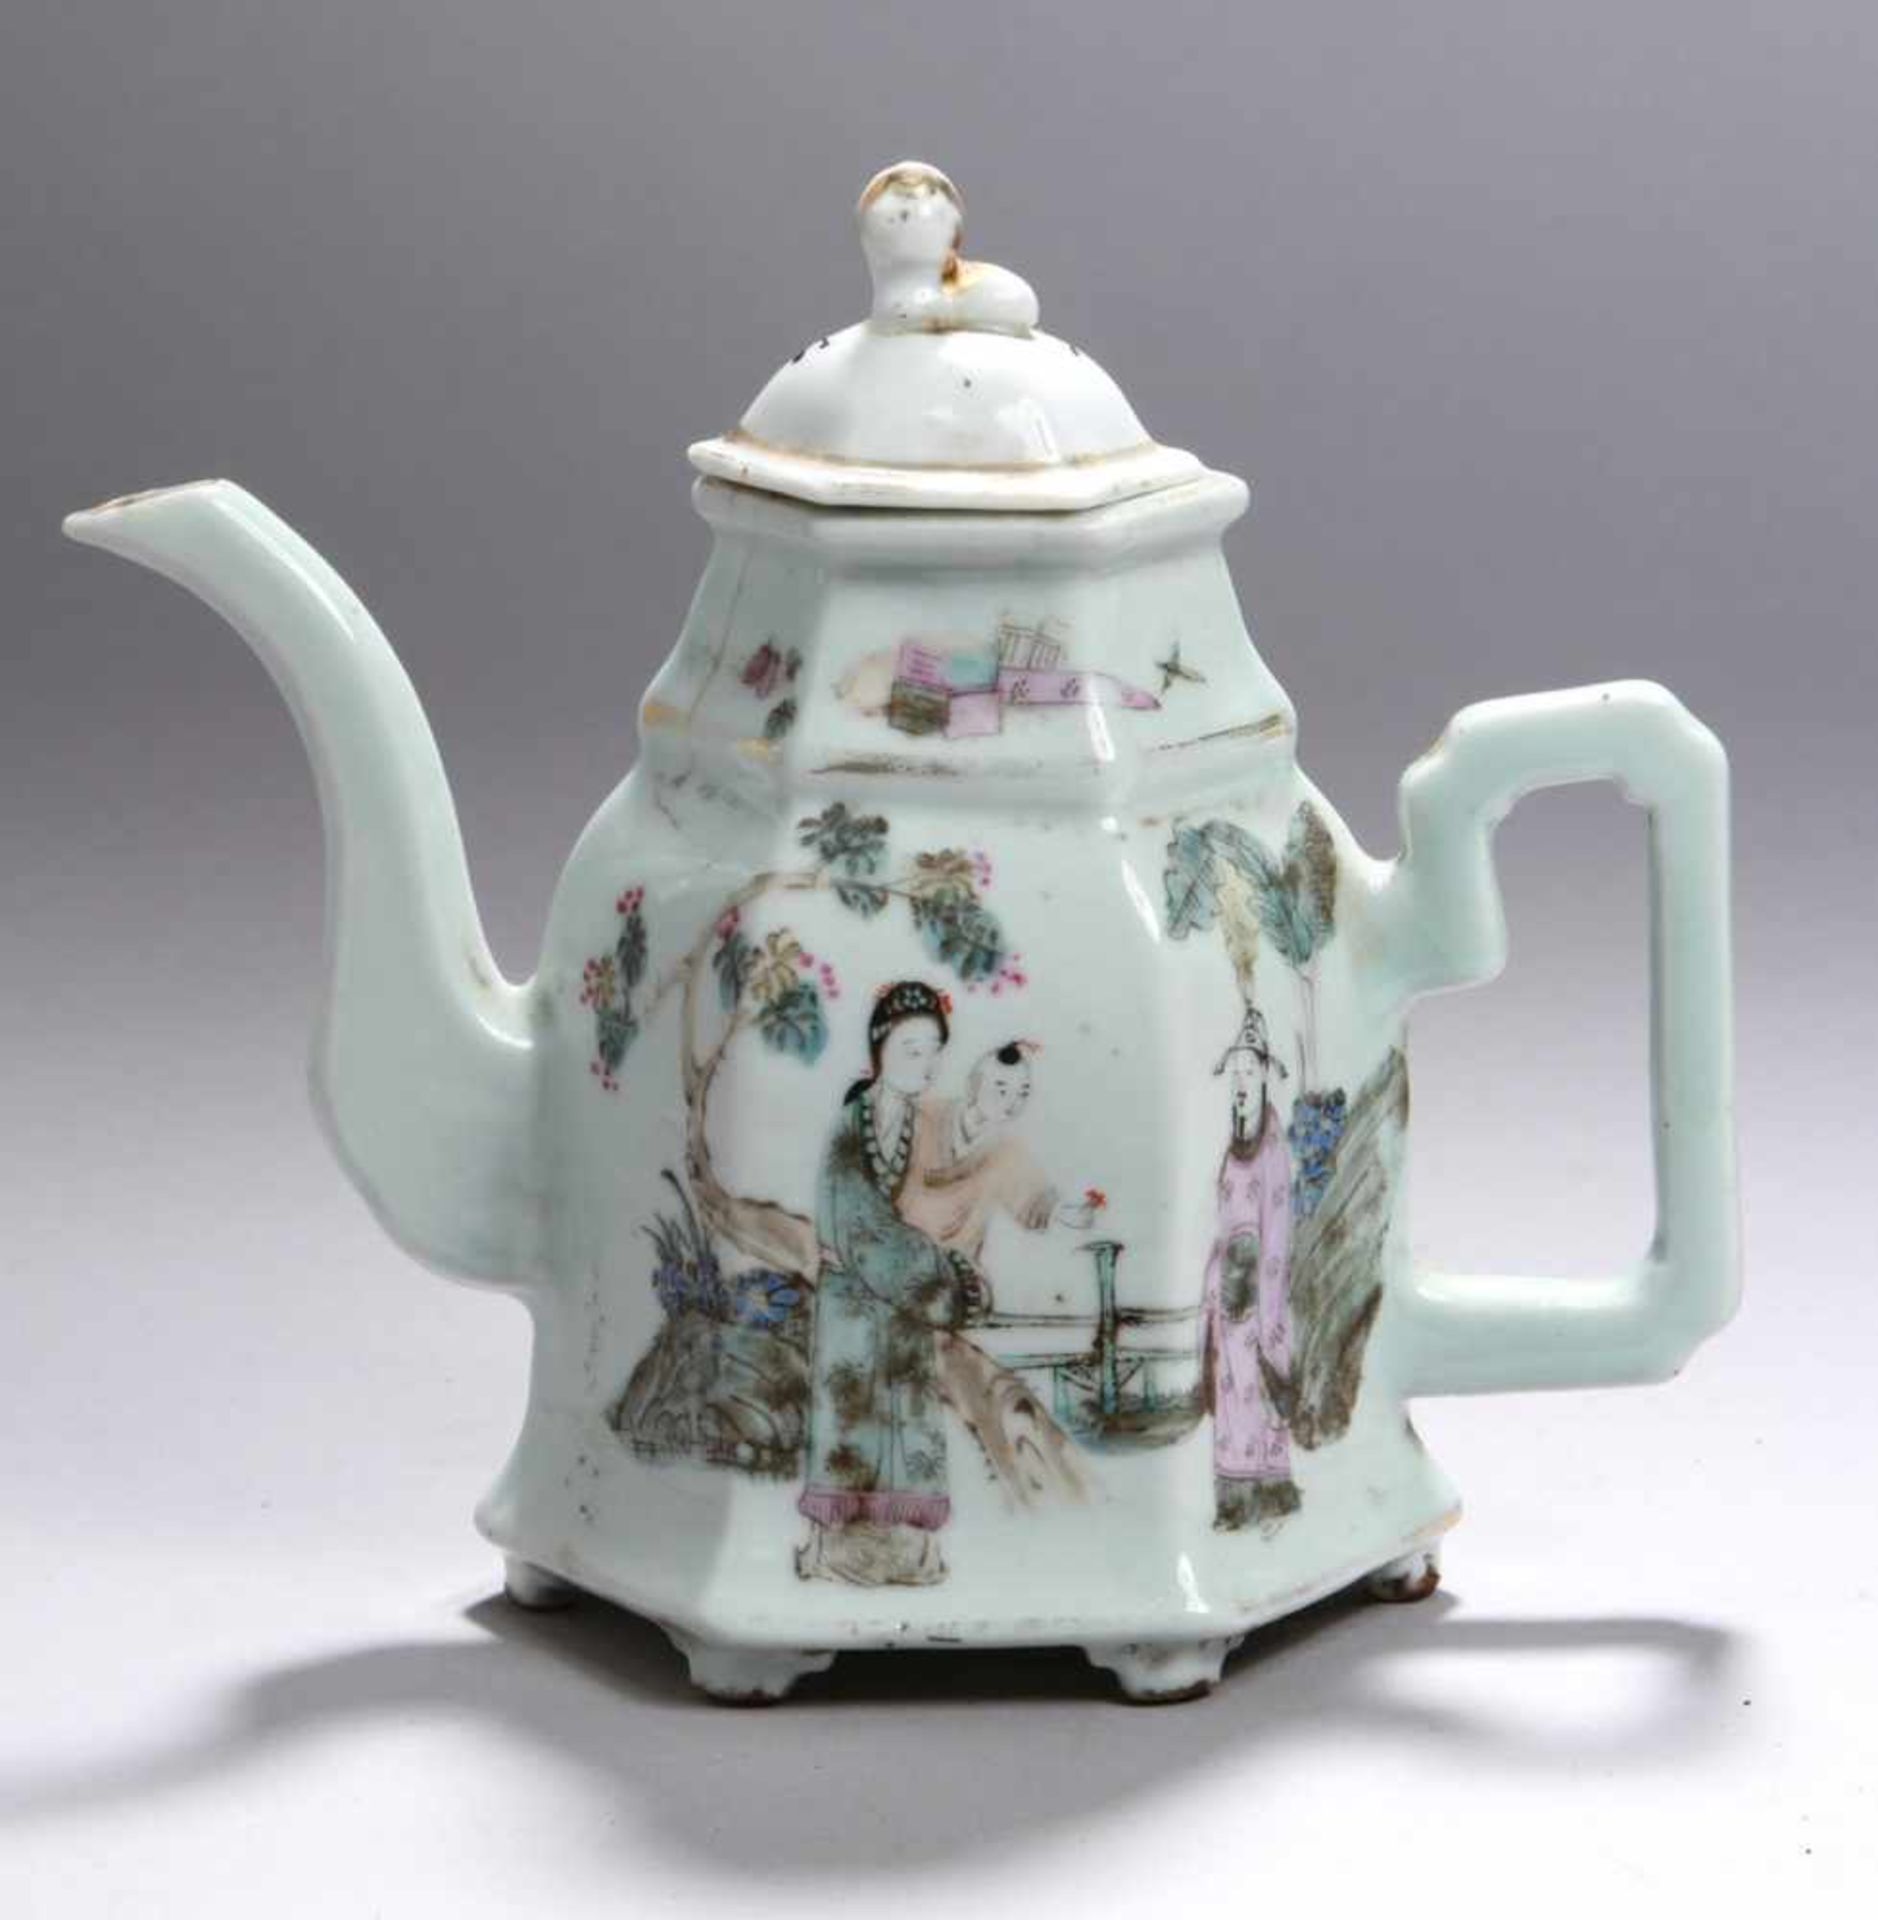 Porzellan-Teekanne, China, um 1900, über 6 Nuppenfüßchen sechseckiger Korpus mit kantigemHenkel